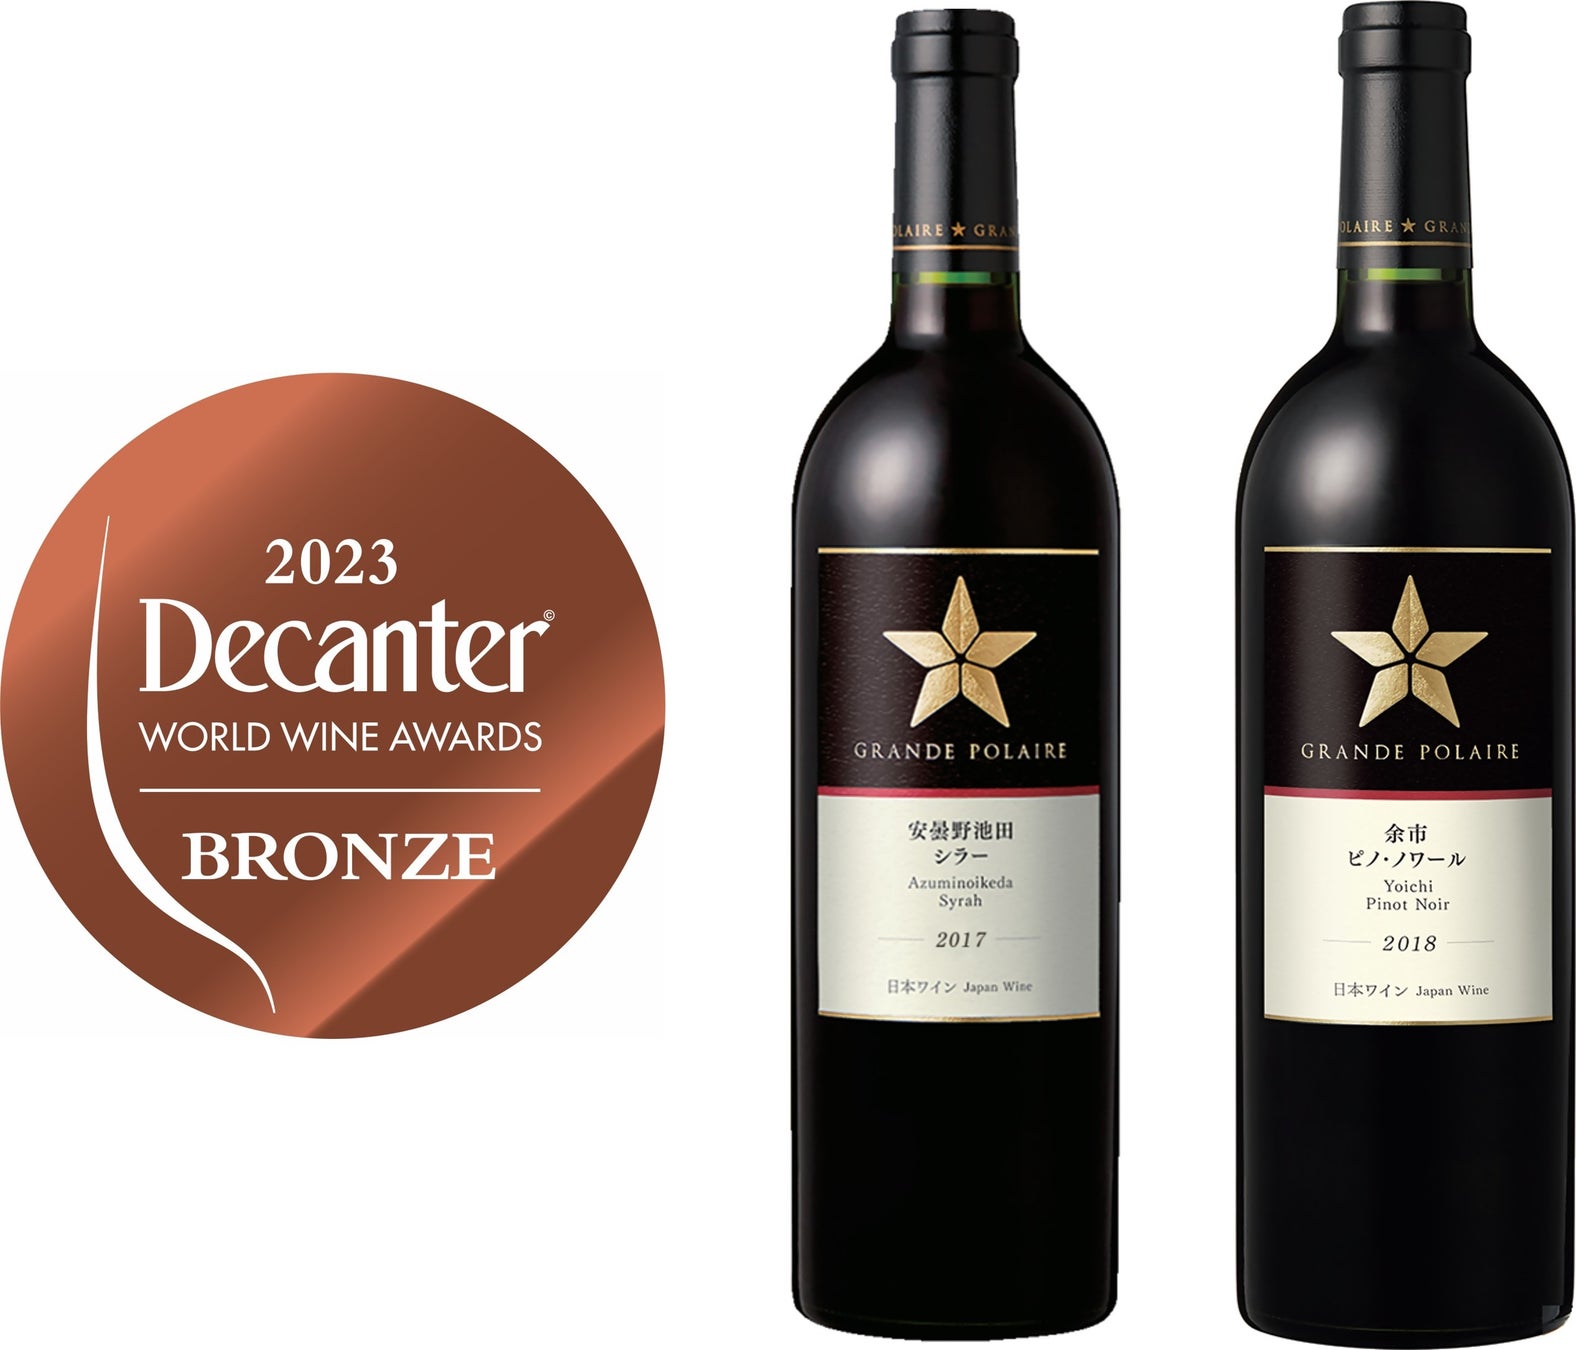 「Decanter World Wine Awards 2023」で日本ワイン「グランポレール　安曇野池田シラー　2017」と「グランポレール　余市ピノ・ノワール　2018」が銅賞を受賞